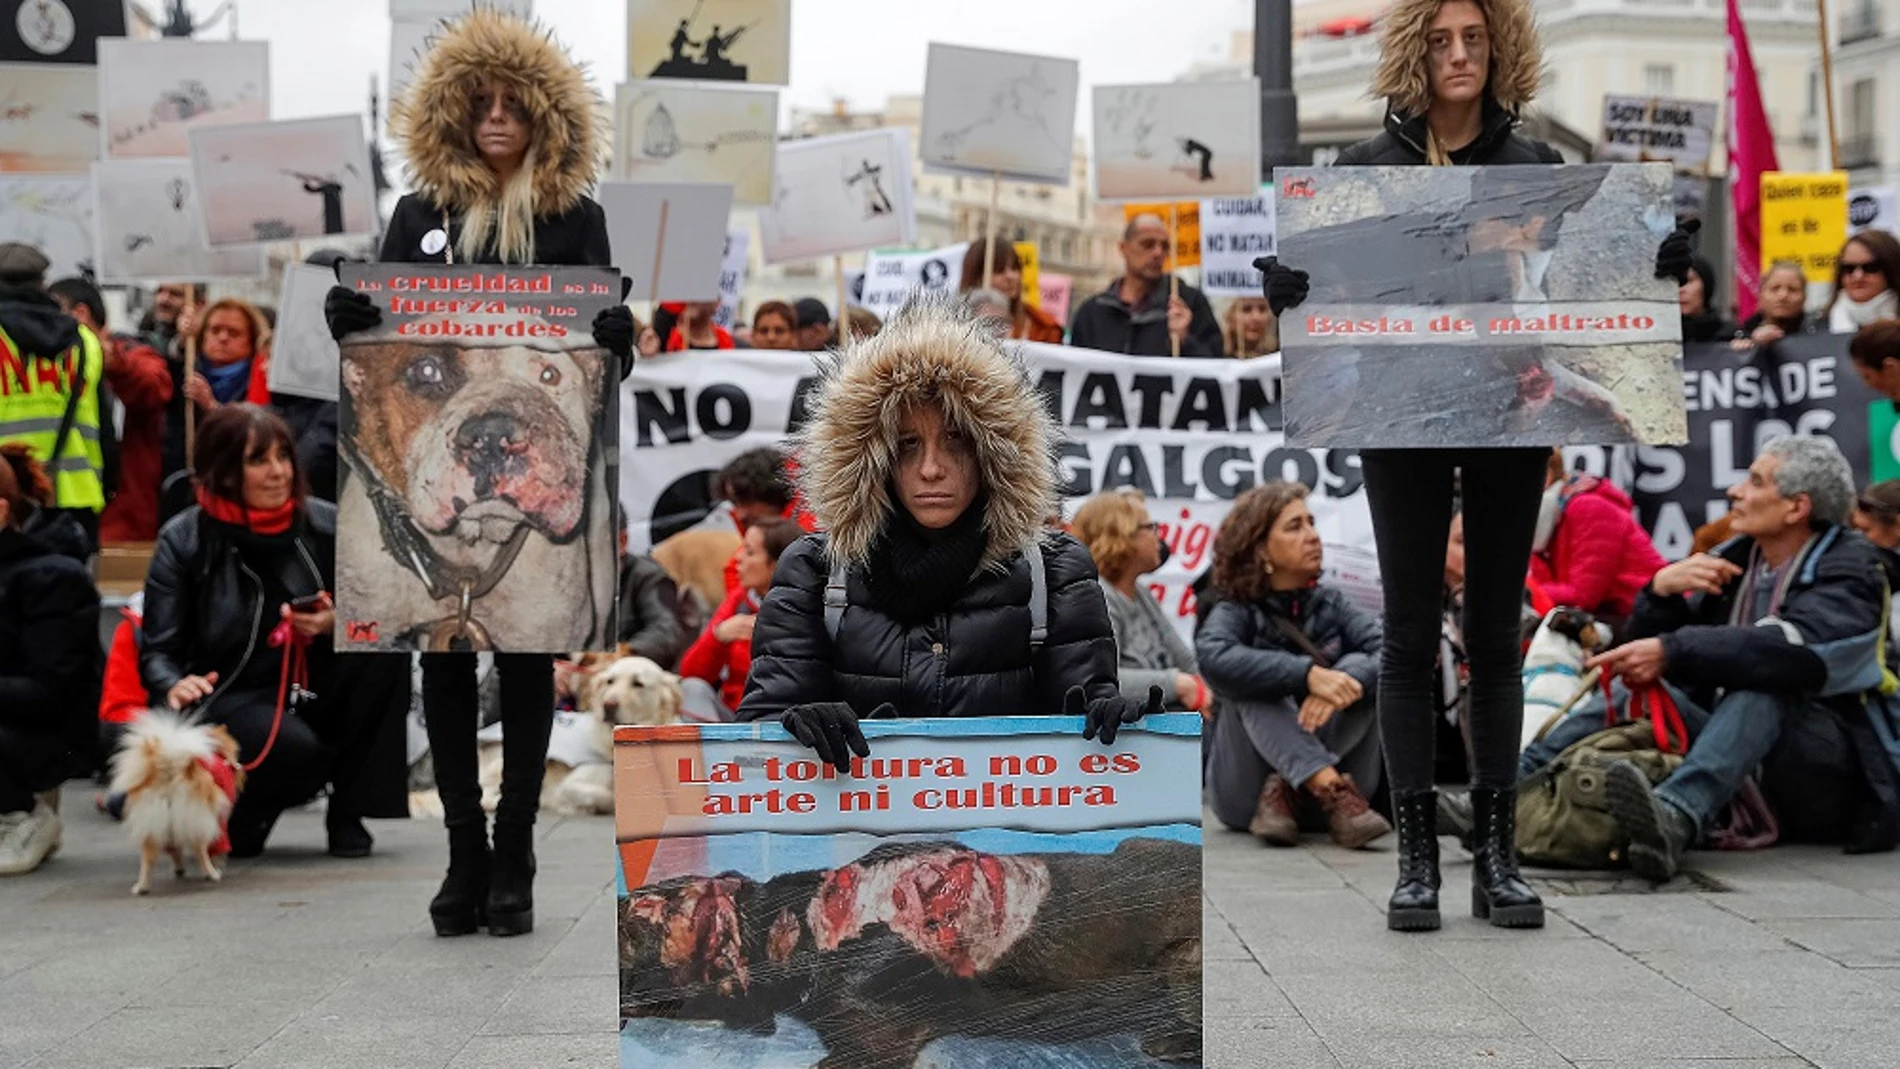 Imagen de la protesta en Madrid para denunciar las negativas consecuencias de la caza en España y reivindicar una ley estatal de protección animal